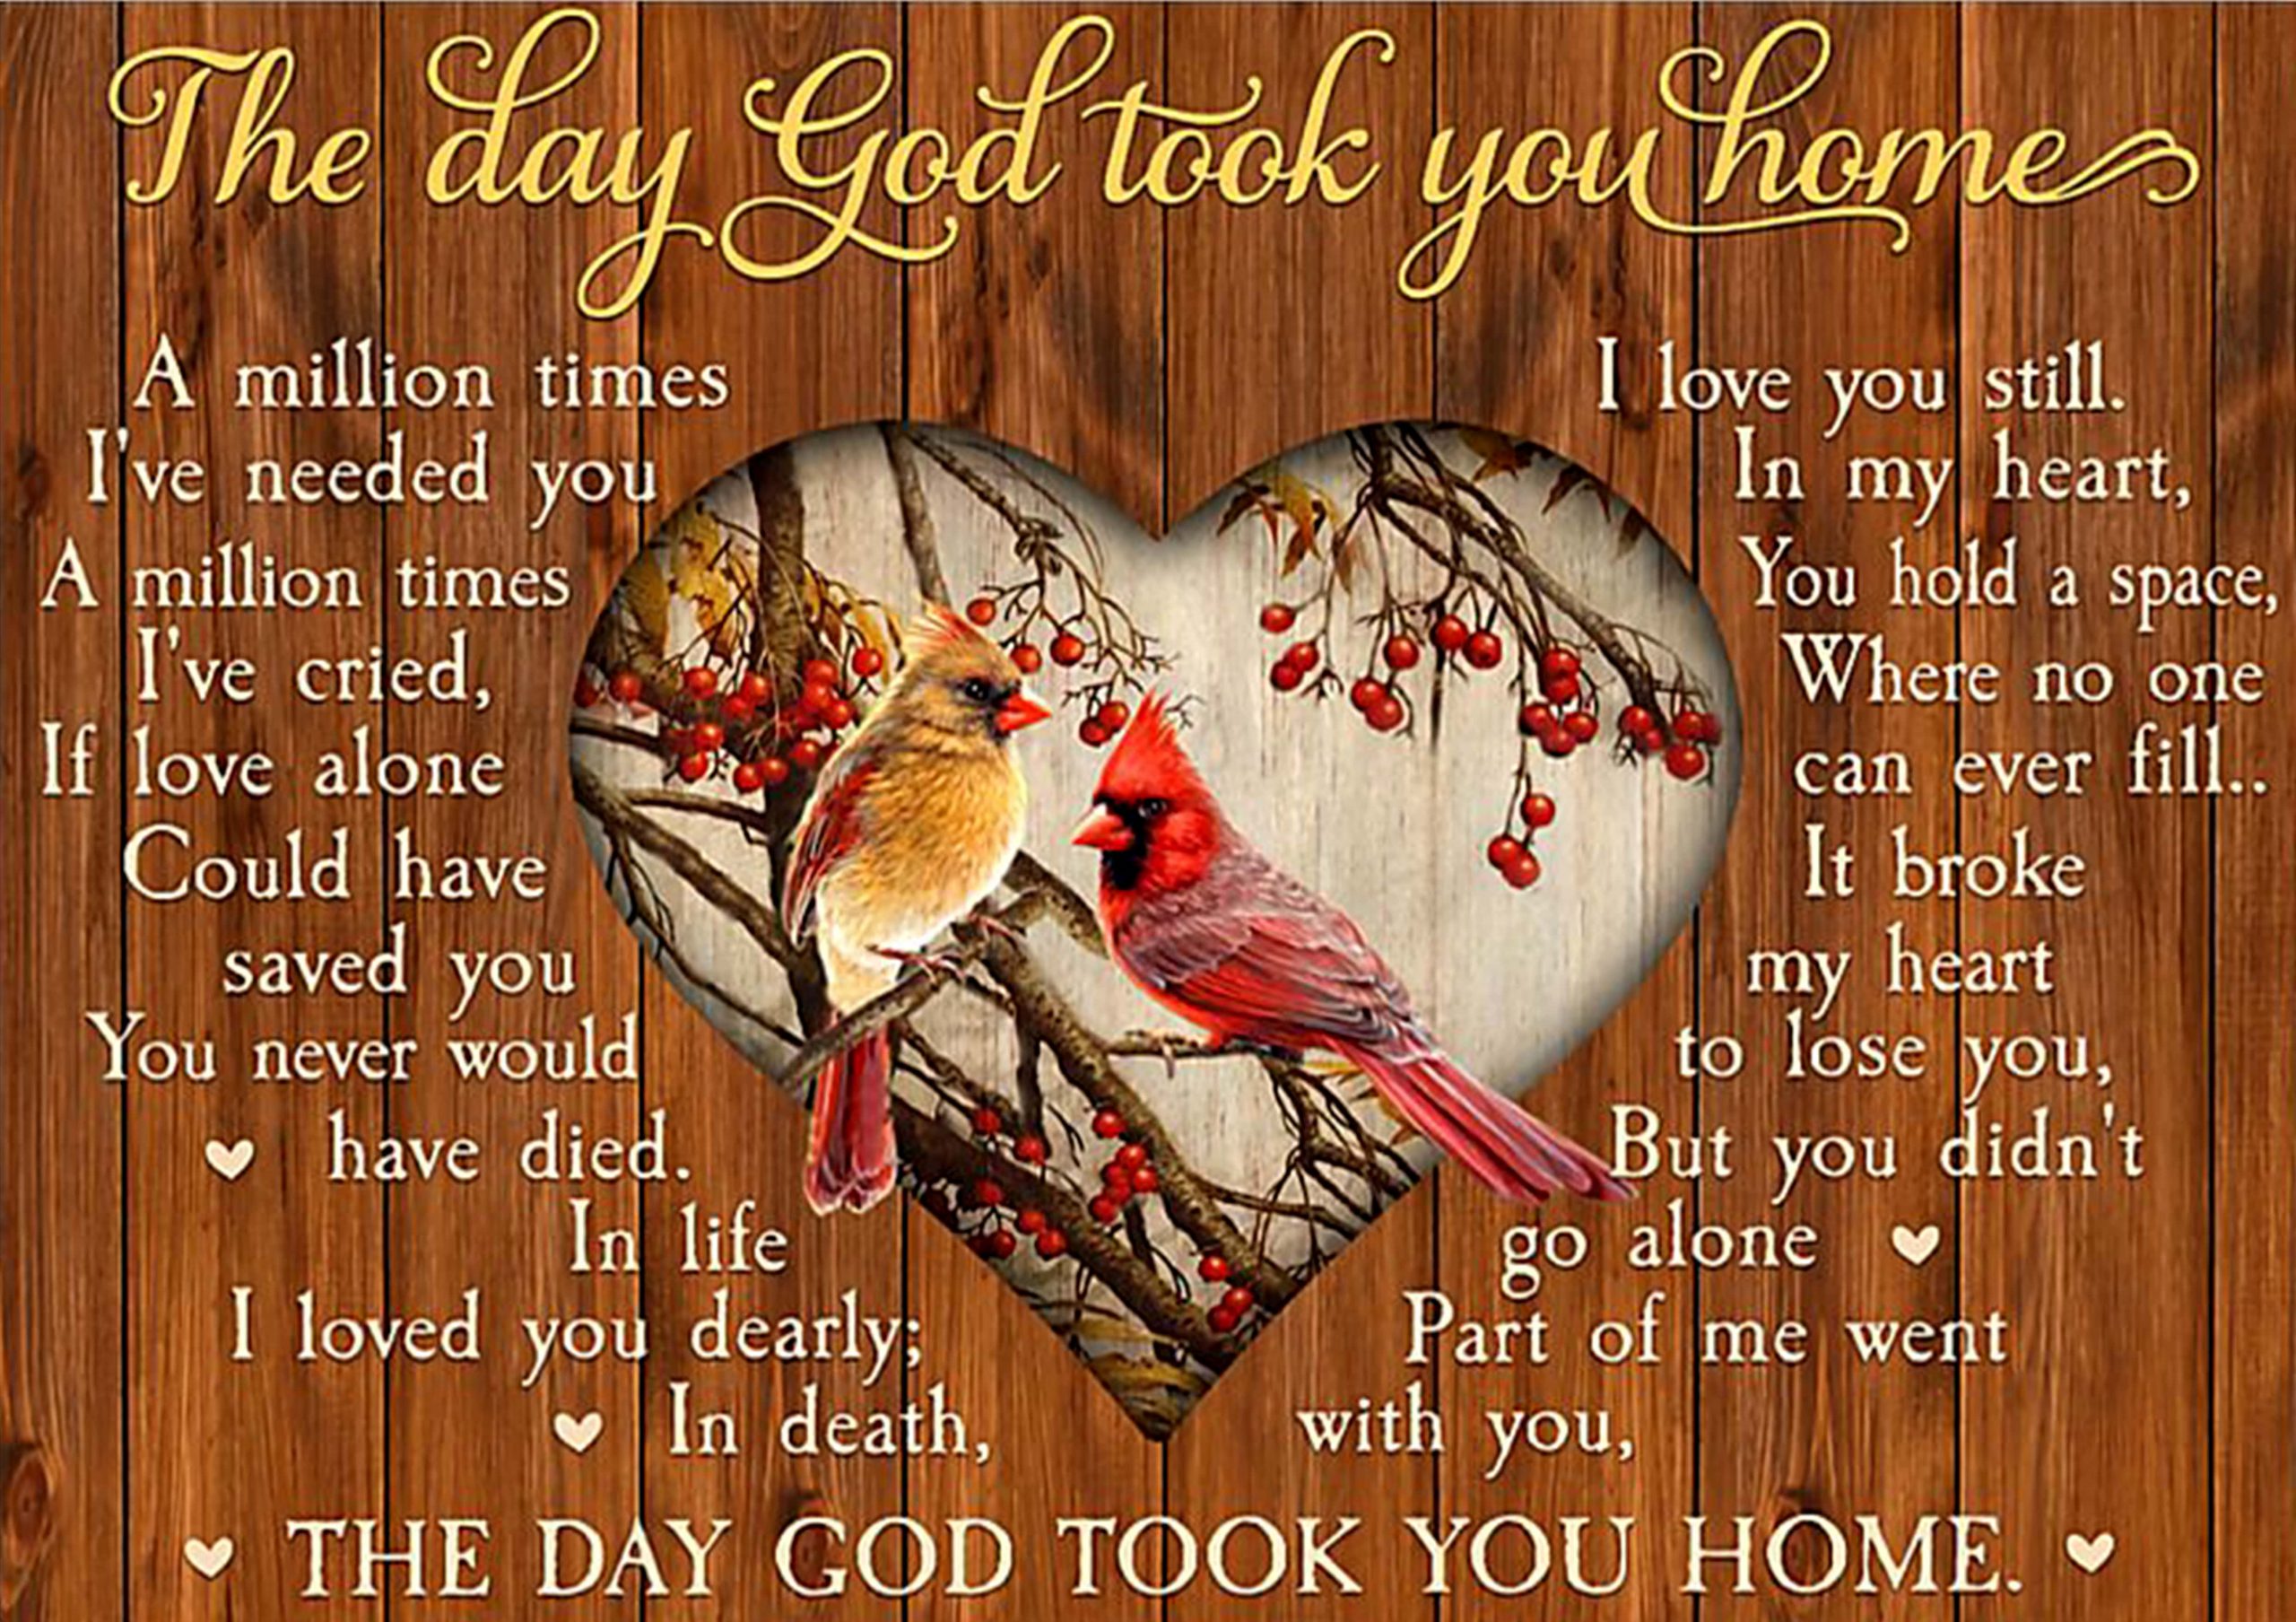 the day God took you home cardinalis cardinalis poster 1 - Copy (3)